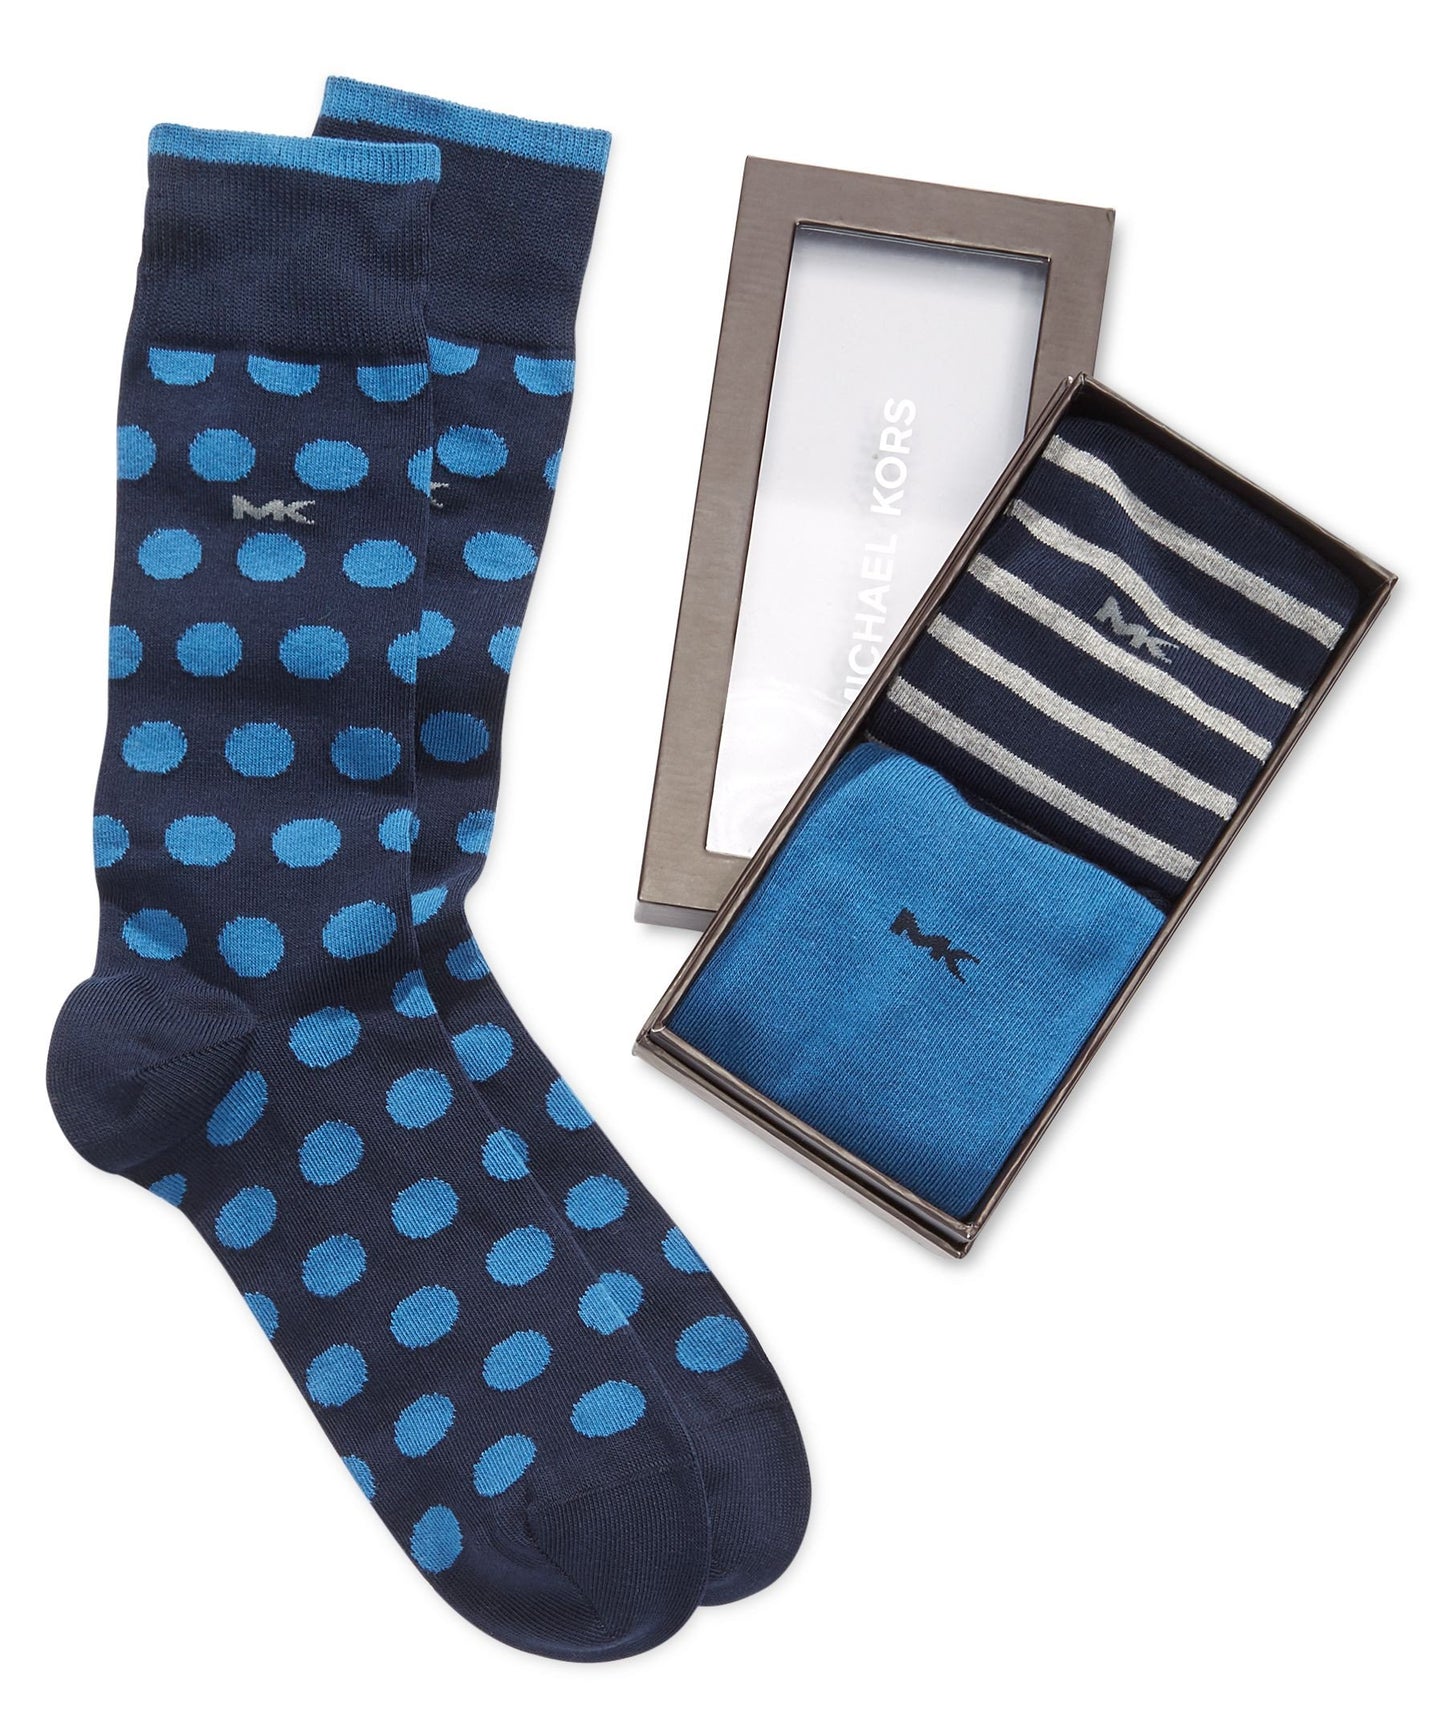 Michael Kors Three-Pack Socks Gift-Pack